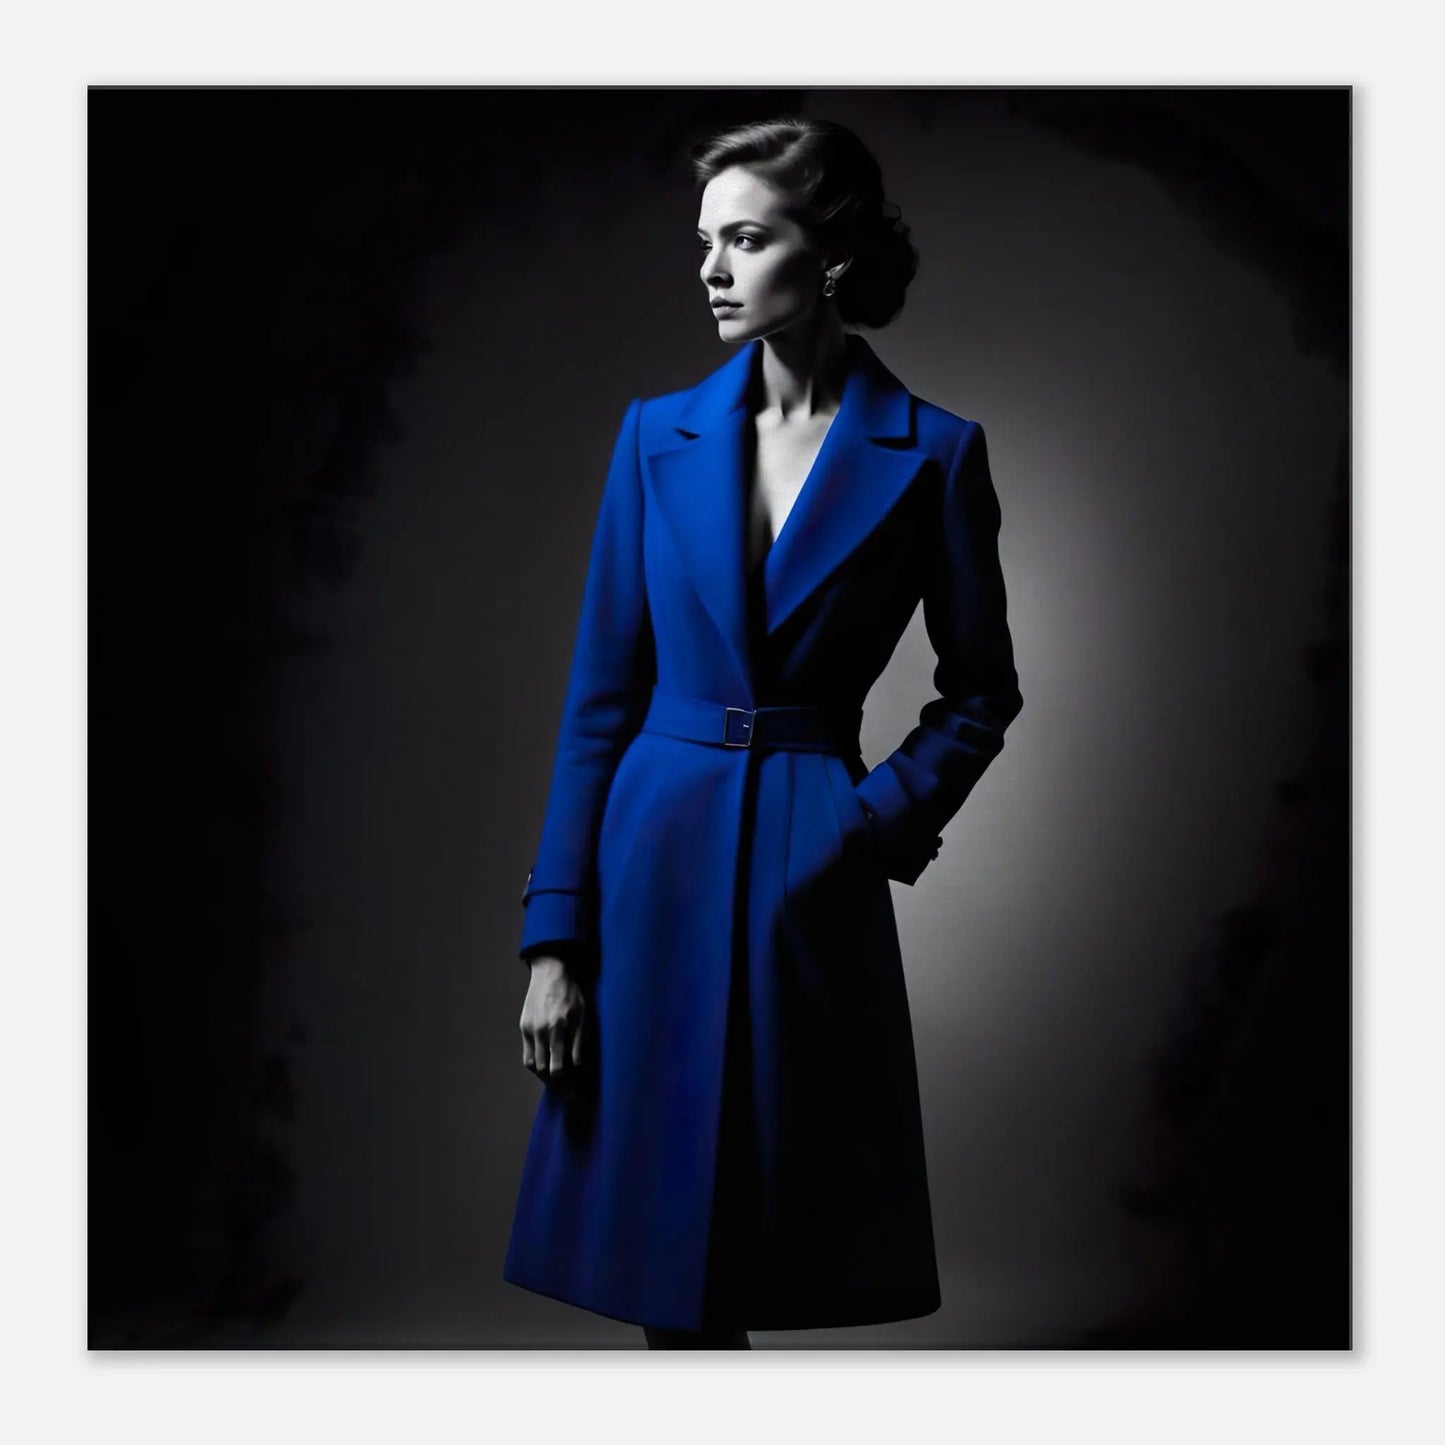 Leinwandbild - Frau im blauen Mantel - Schwarz-Weiß Stil, KI-Kunst - RolConArt, Schwarz-Weiß mit Akzentfarben, 60x60-cm-24x24